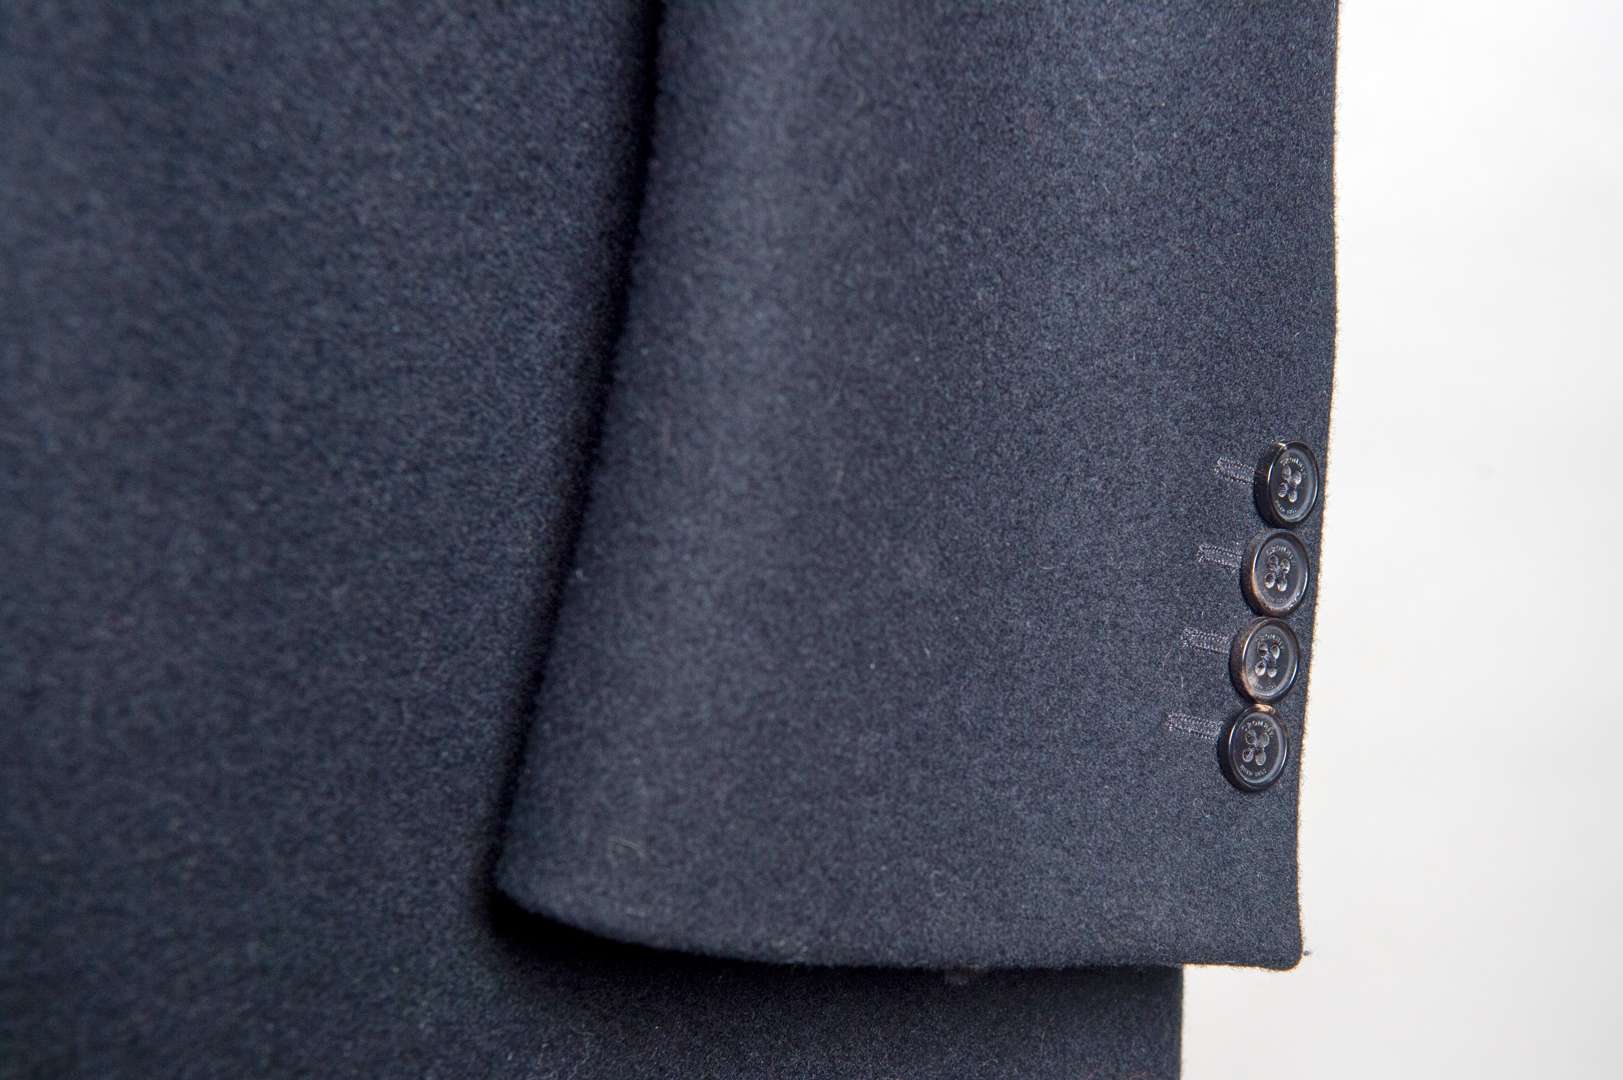 <p>CROMBIE, 100% black woolen covert coat with velvet collar, size 44</p>